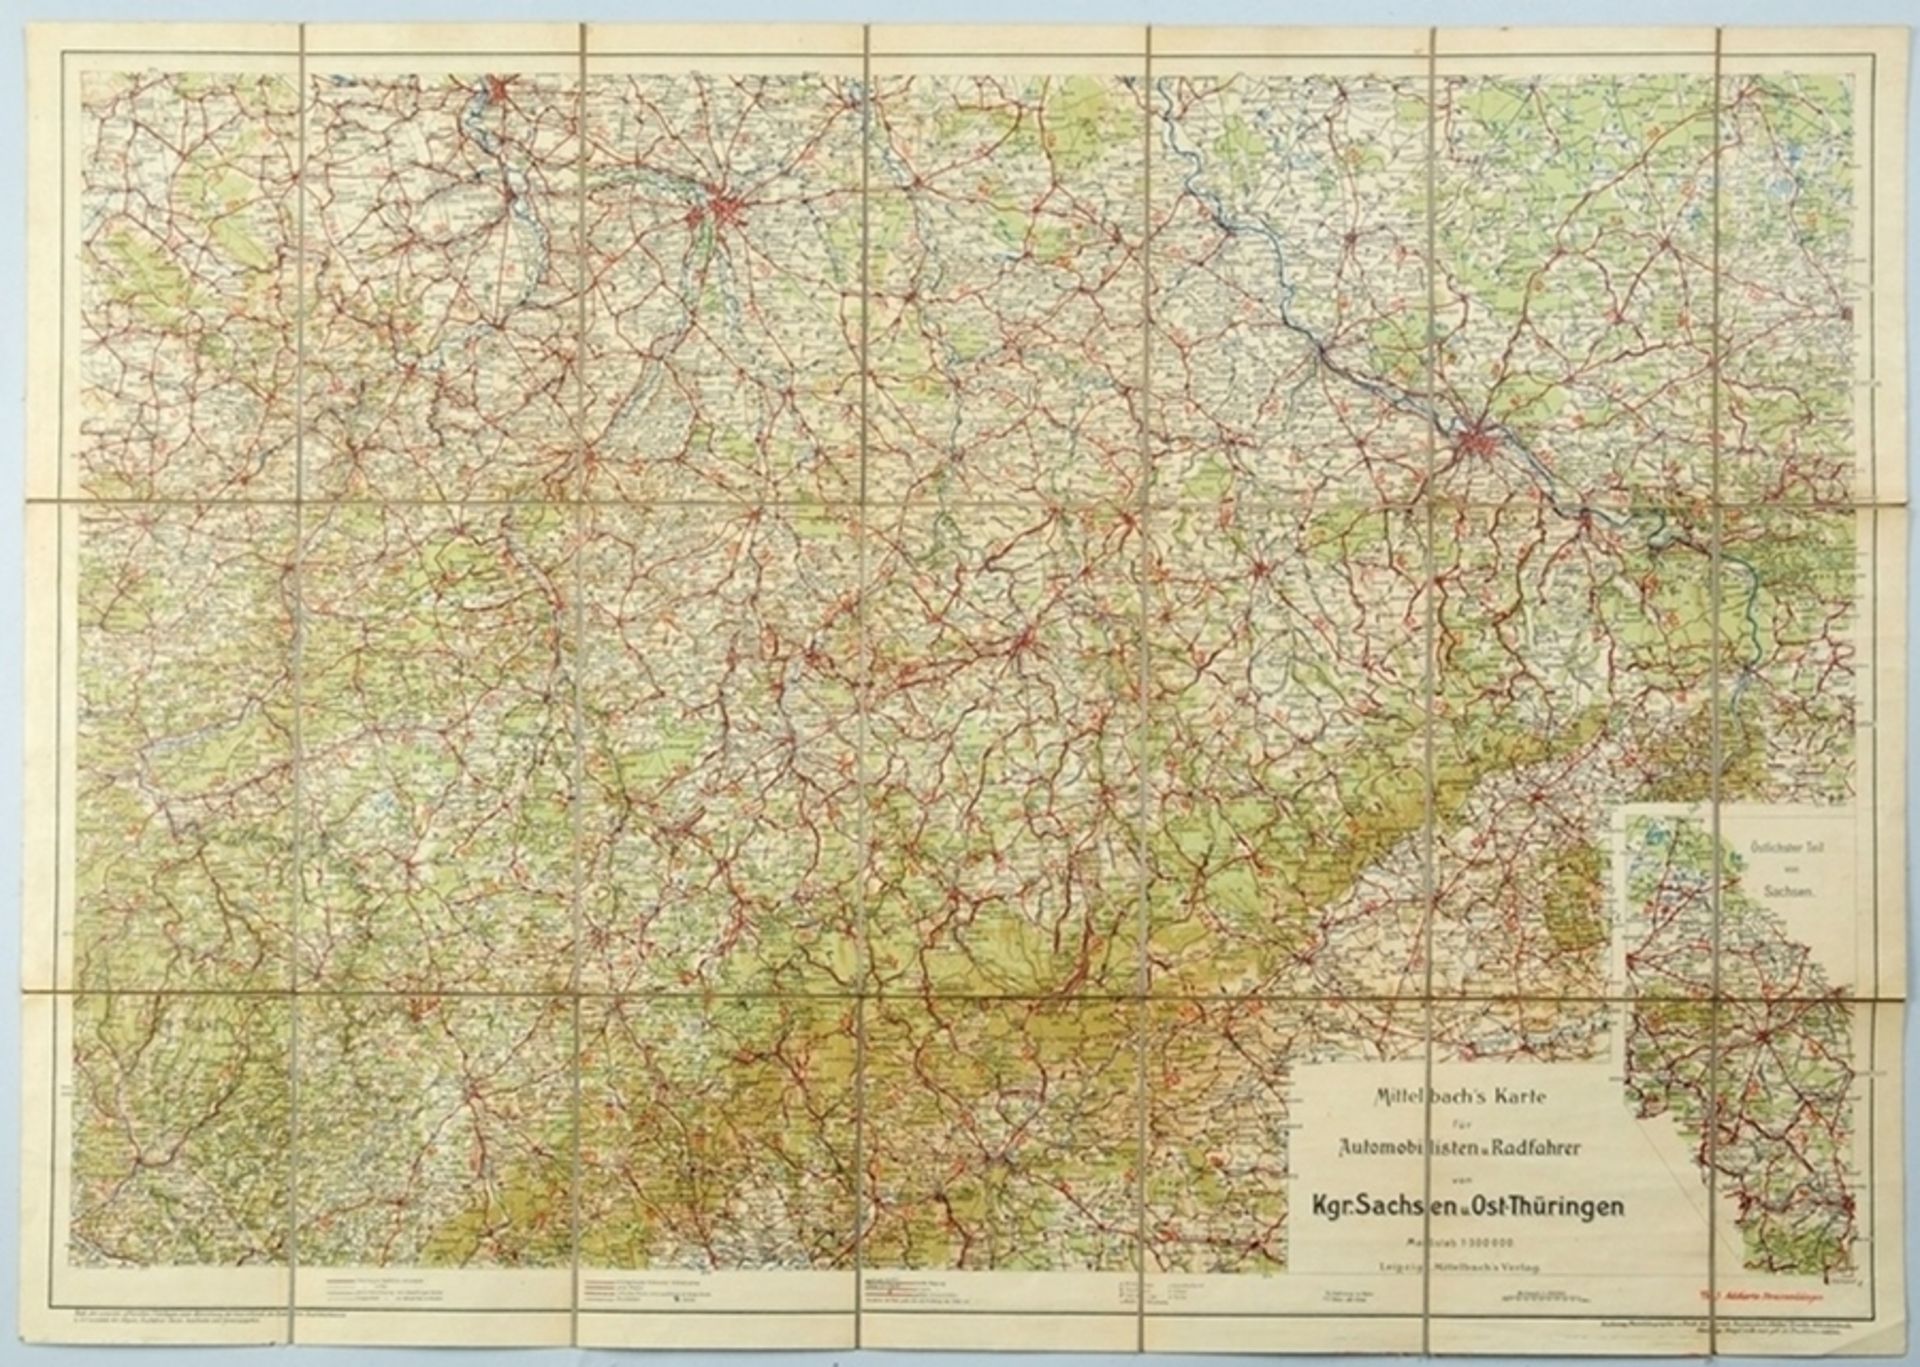 Mittelbach's Karte für Automobilisten u. Radfahrer von Kgr. Sachsen u. Ost-Thüringen"